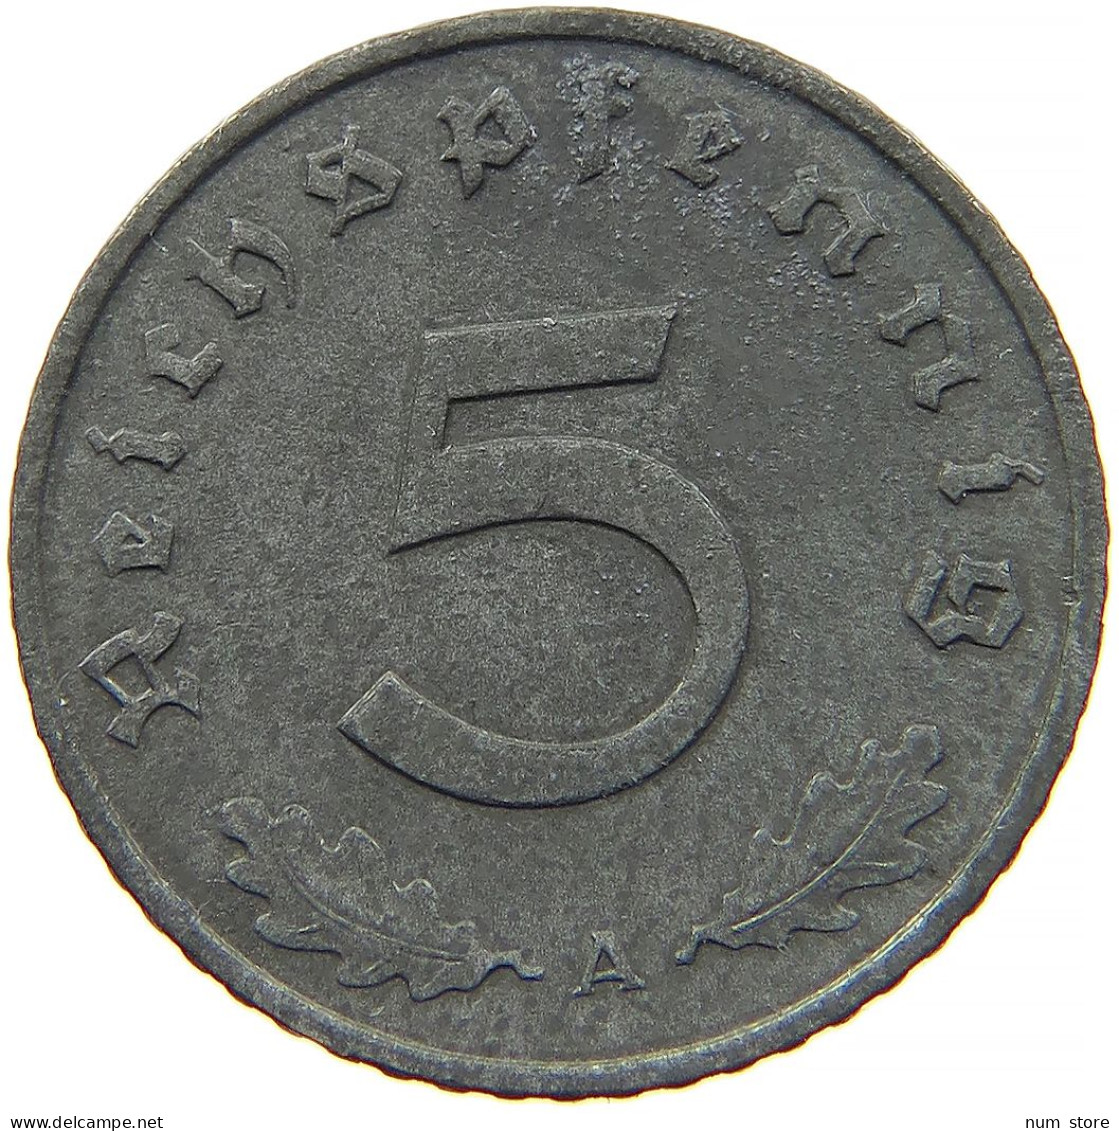 GERMANY 5 REICHSPFENNIG 1941 A #s091 0969 - 5 Reichspfennig